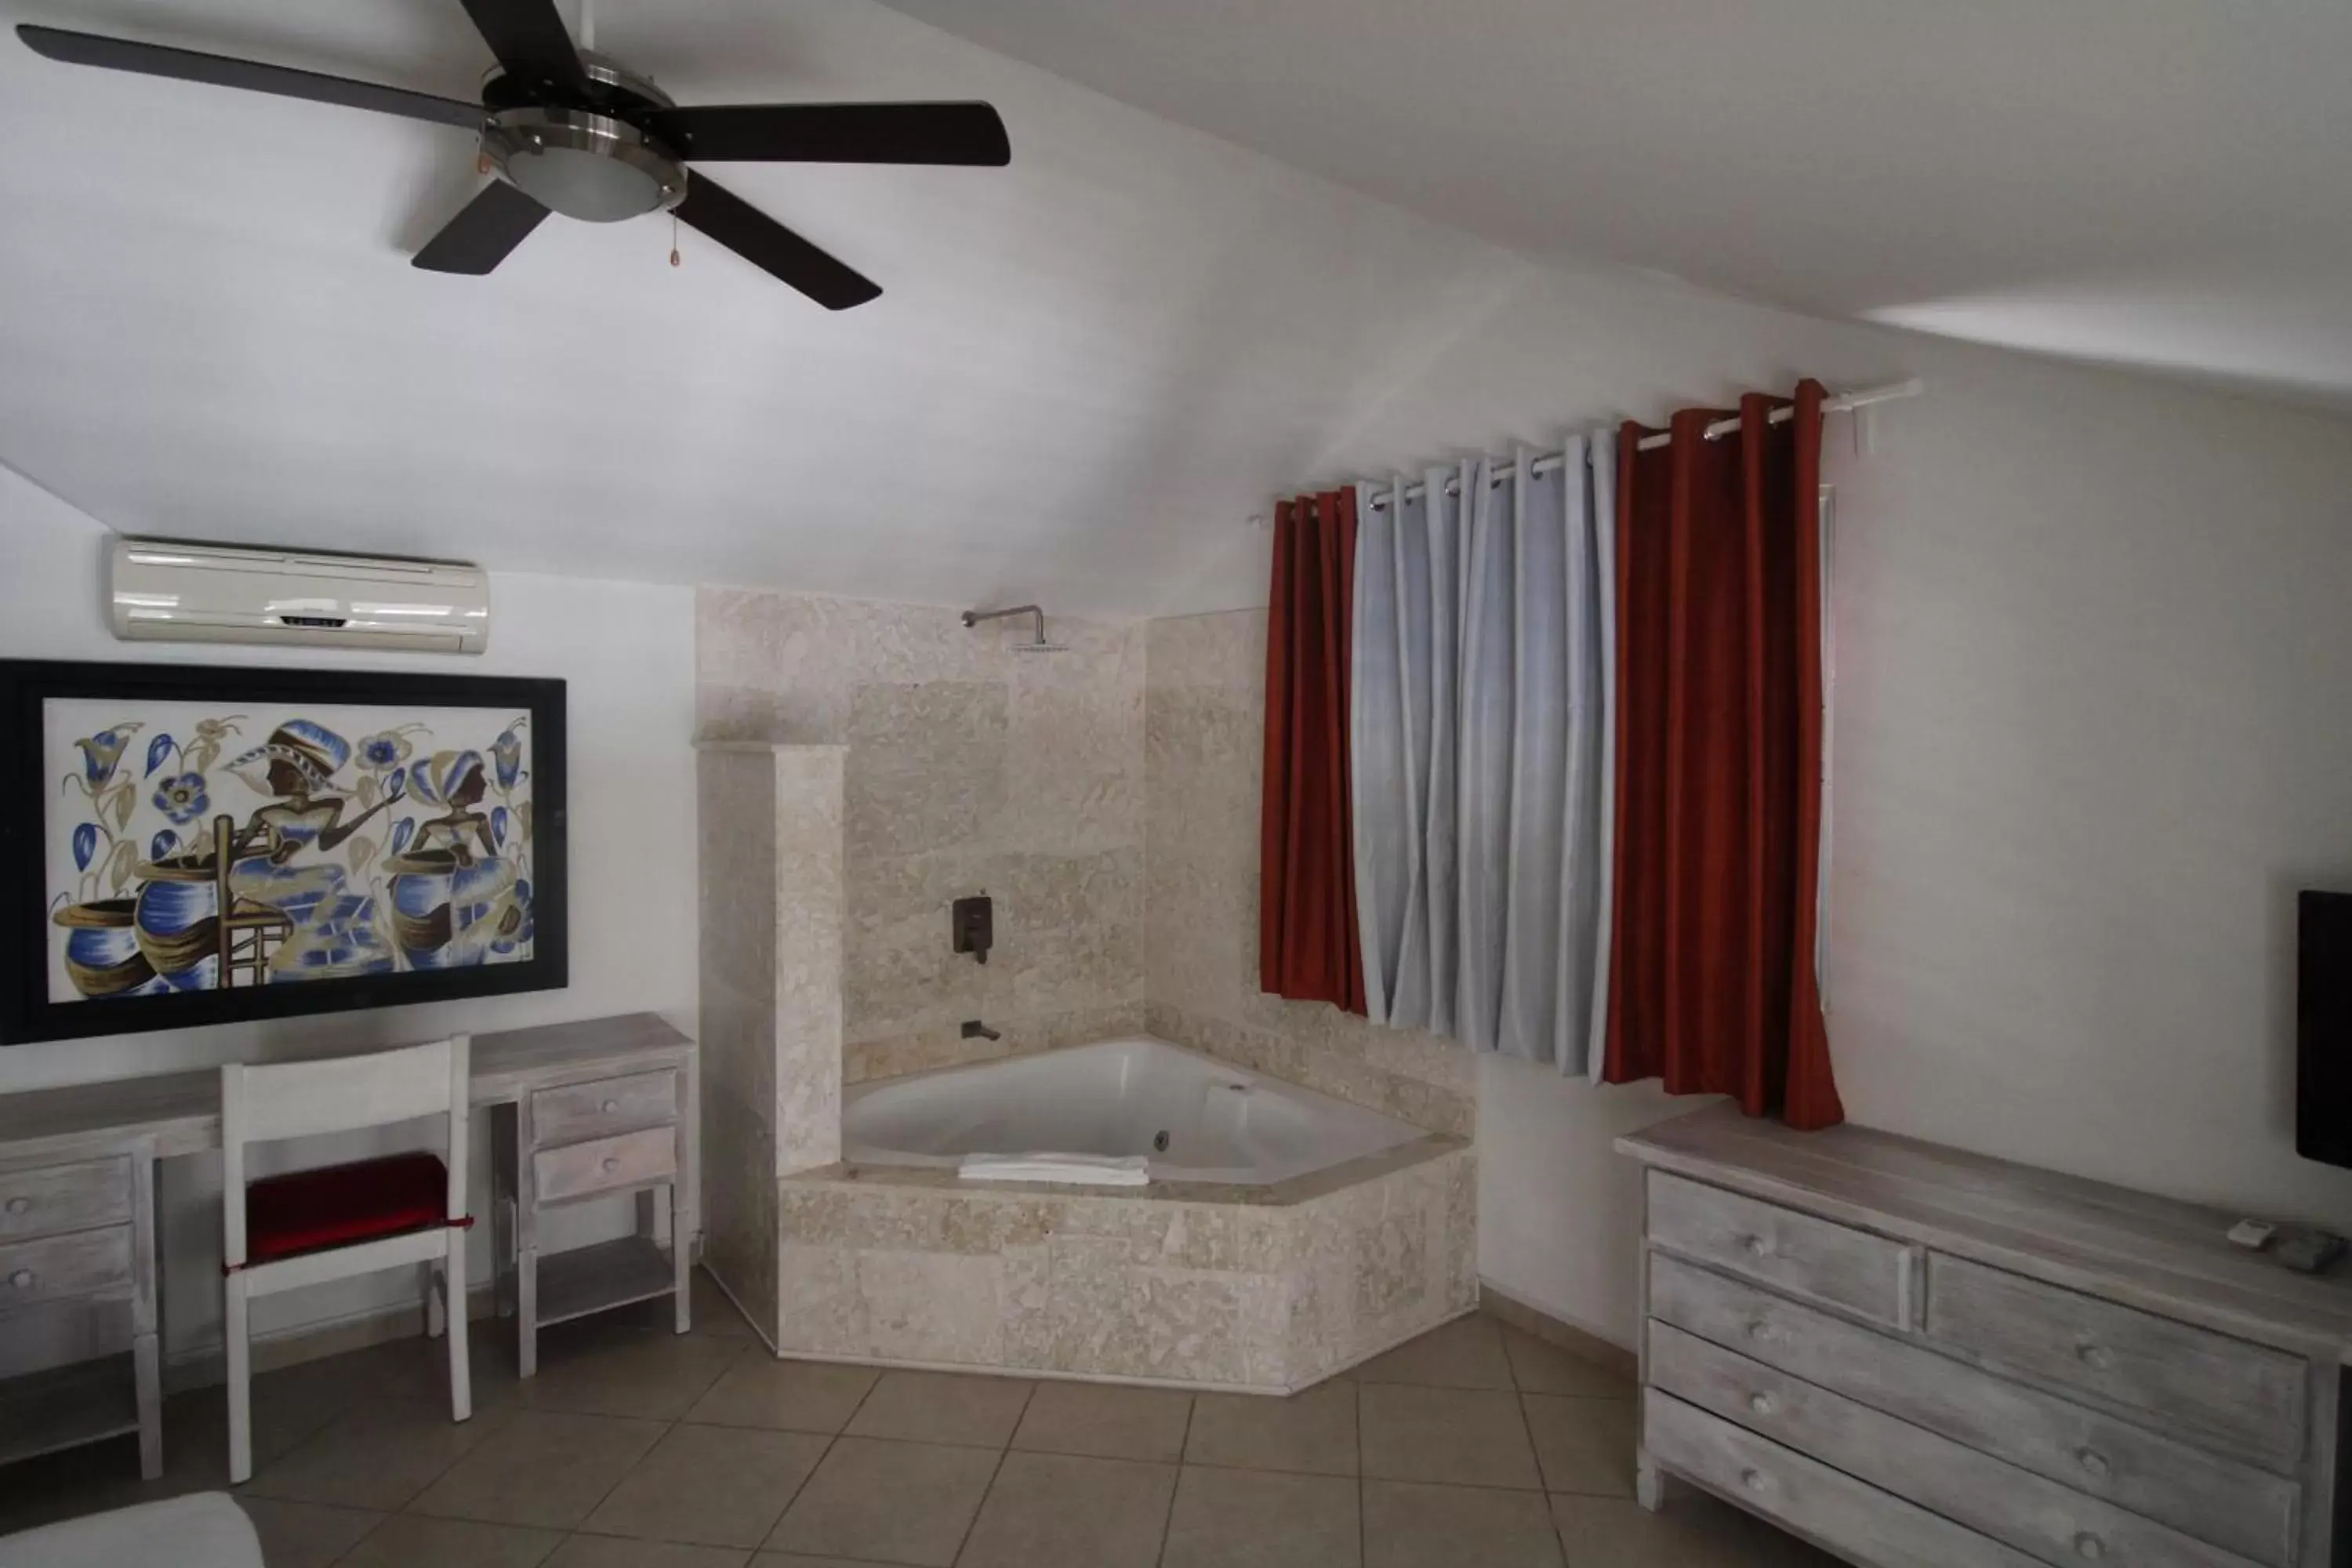 Bathroom in Albachiara Hotel - Las Terrenas